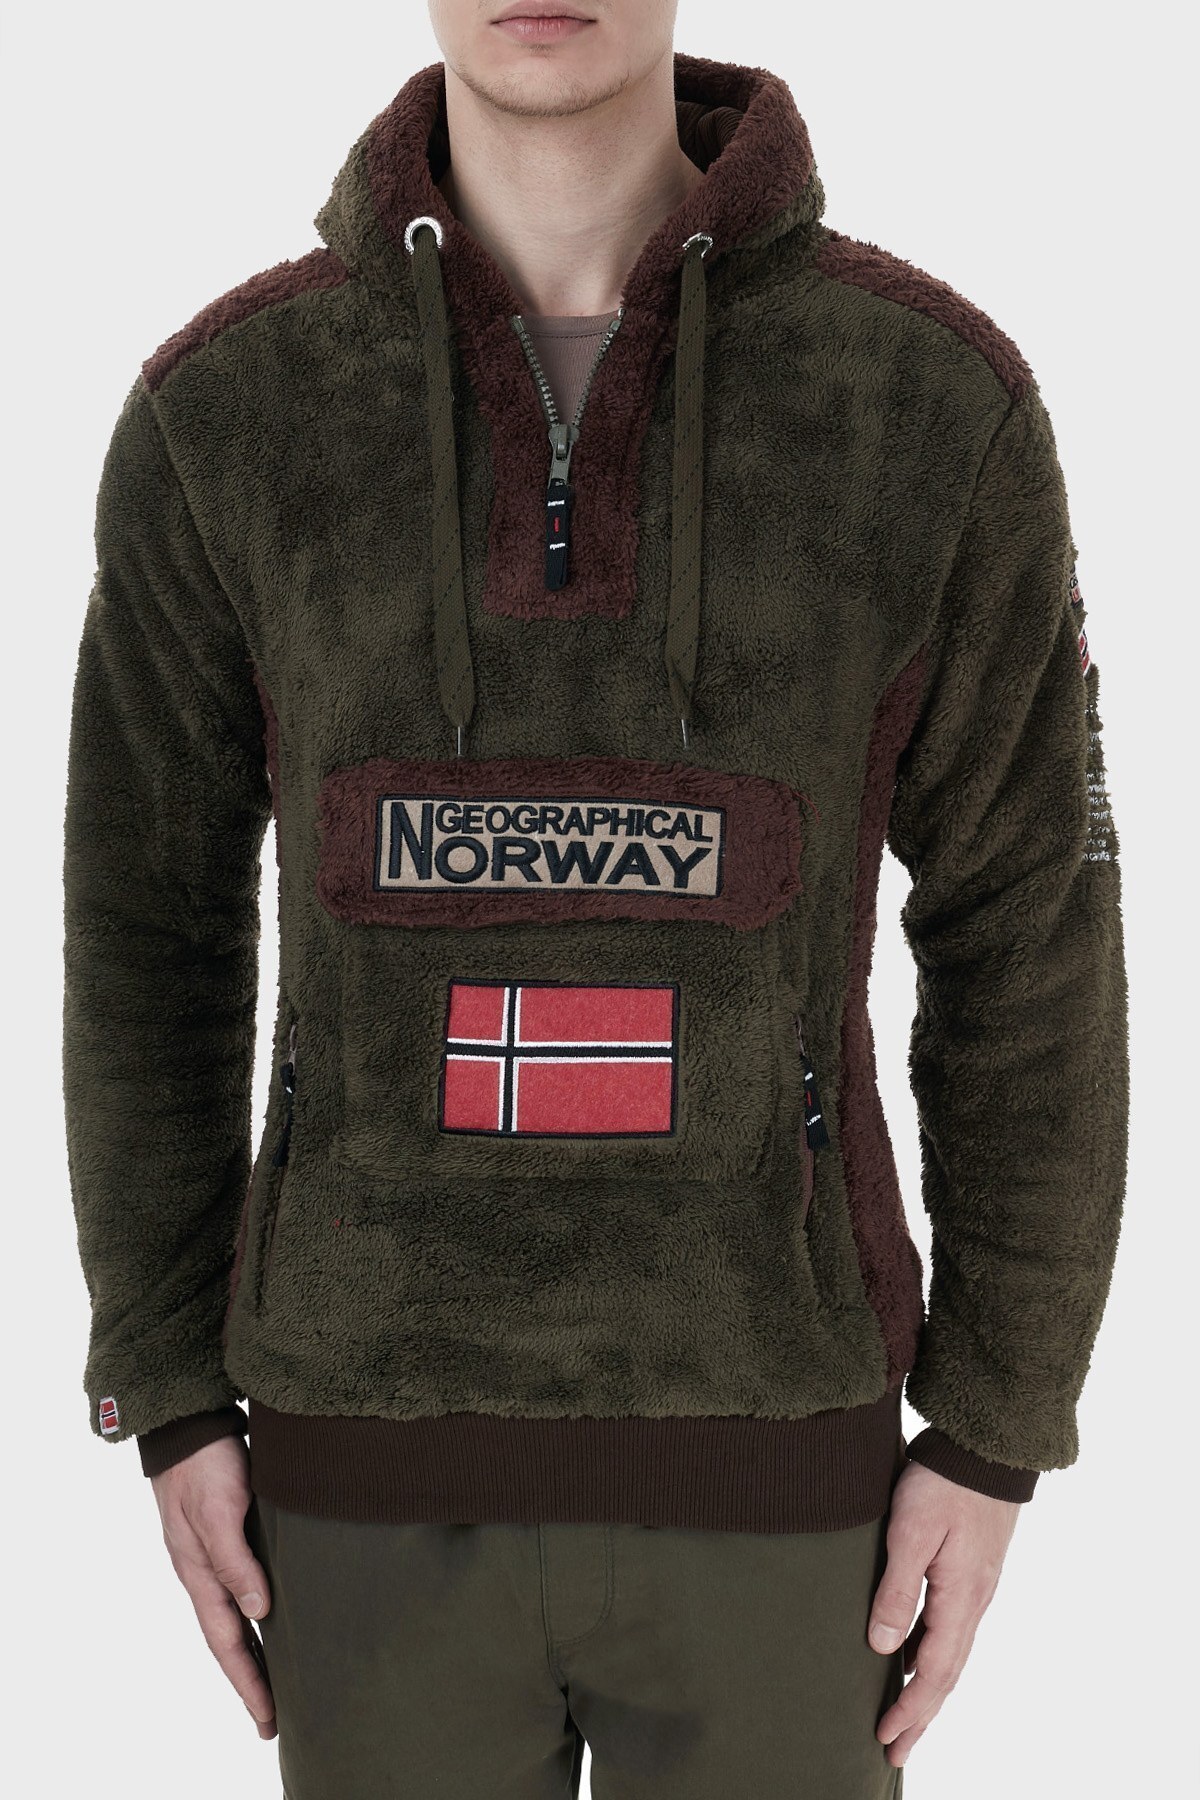 Norway Geographical Kapüşonlu Yarım Fermuarlı Outdoor Polar Erkek Sweat GYMCLASSSHERCO HAKİ